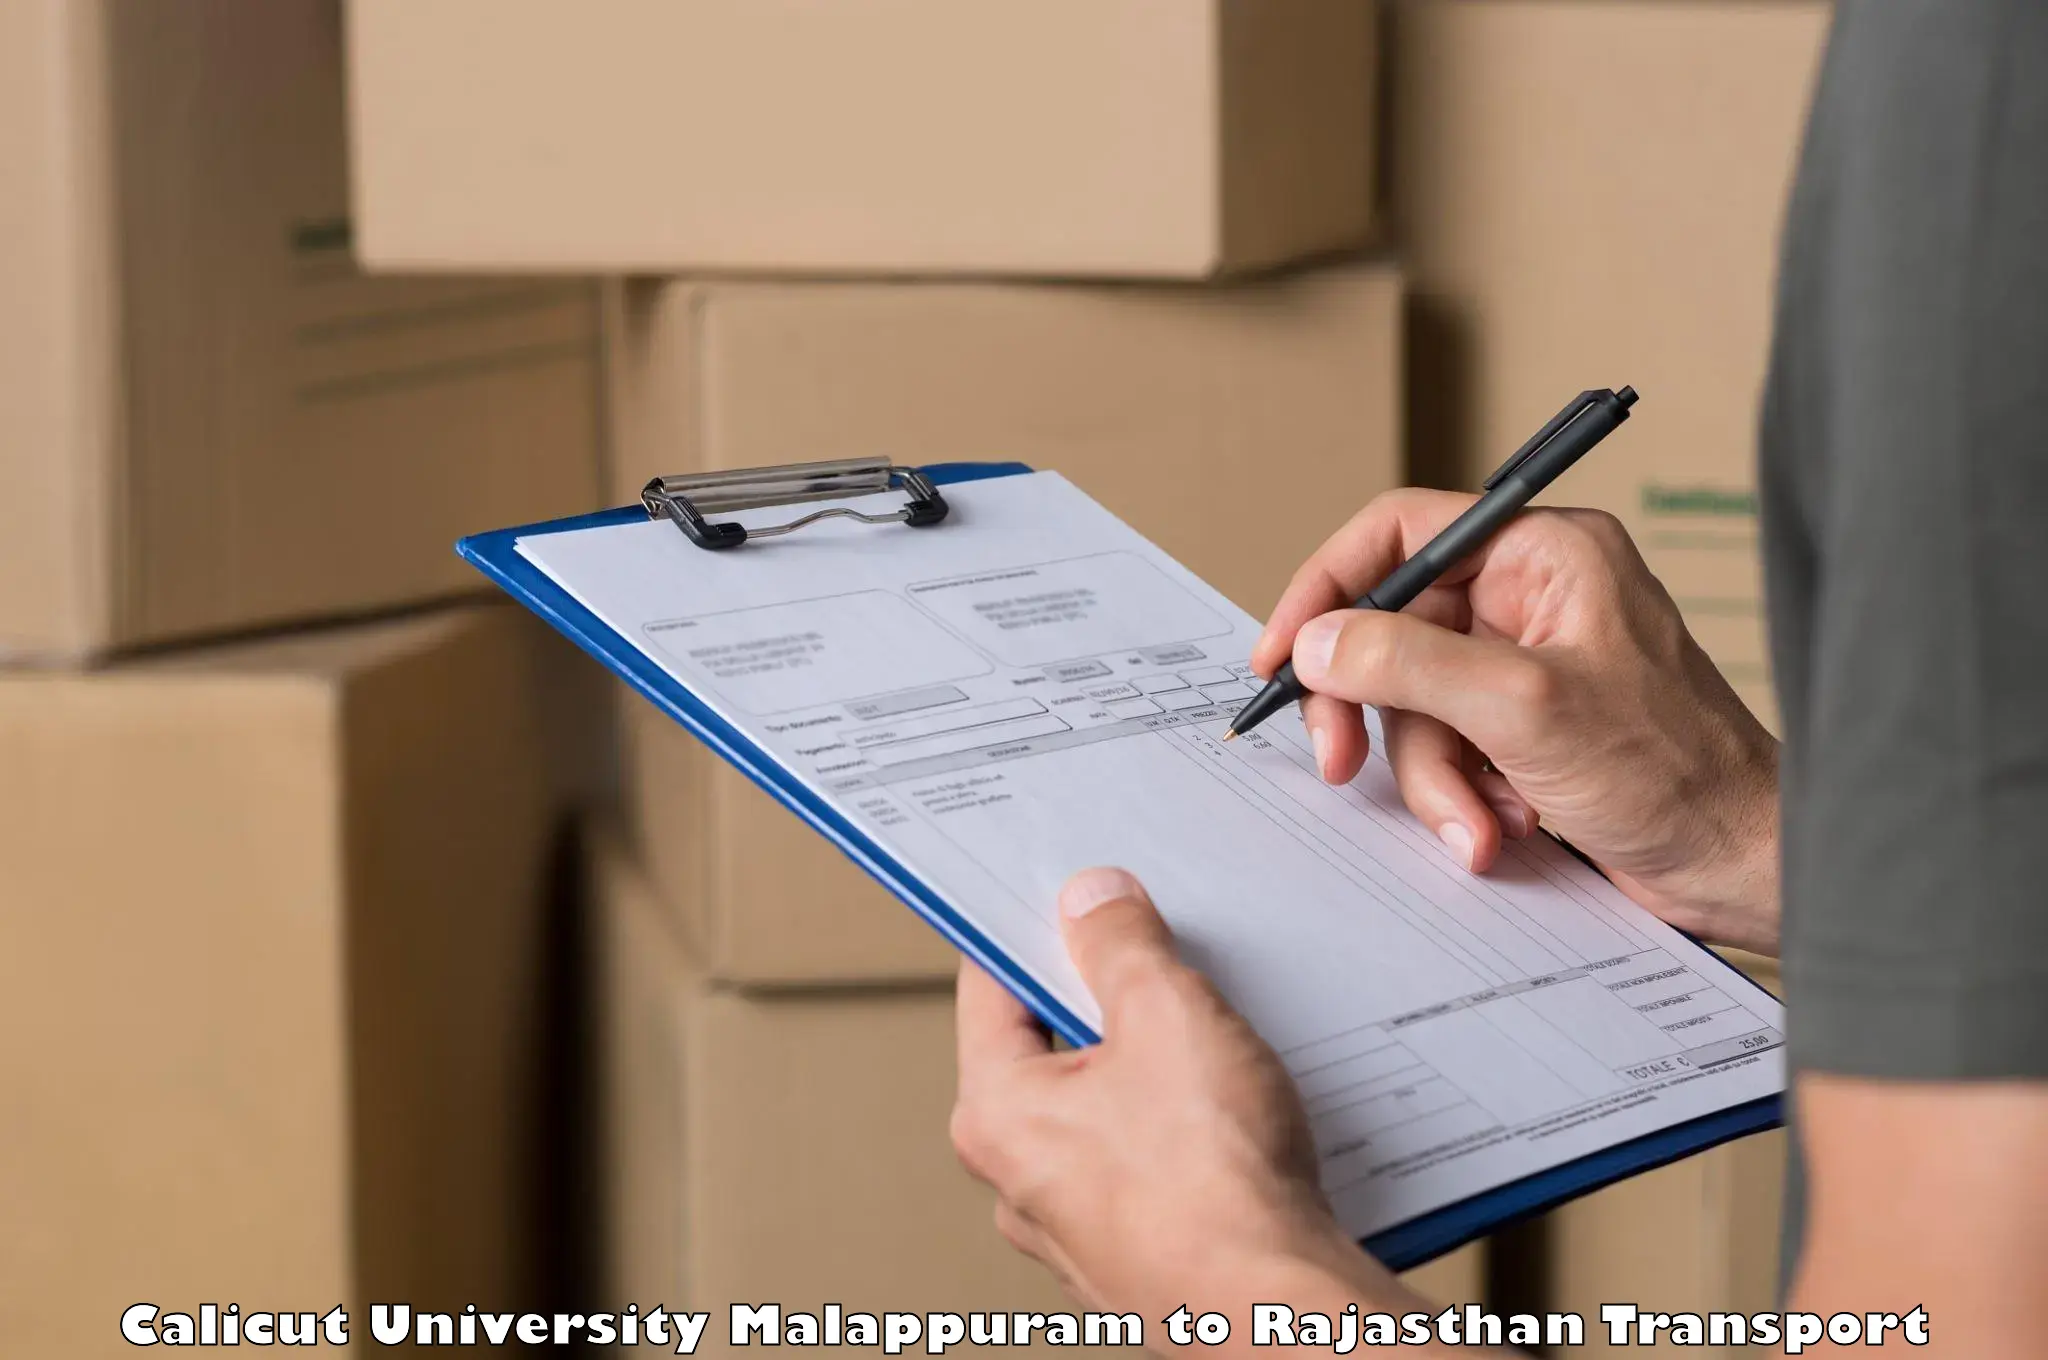 Truck transport companies in India Calicut University Malappuram to Kuchaman